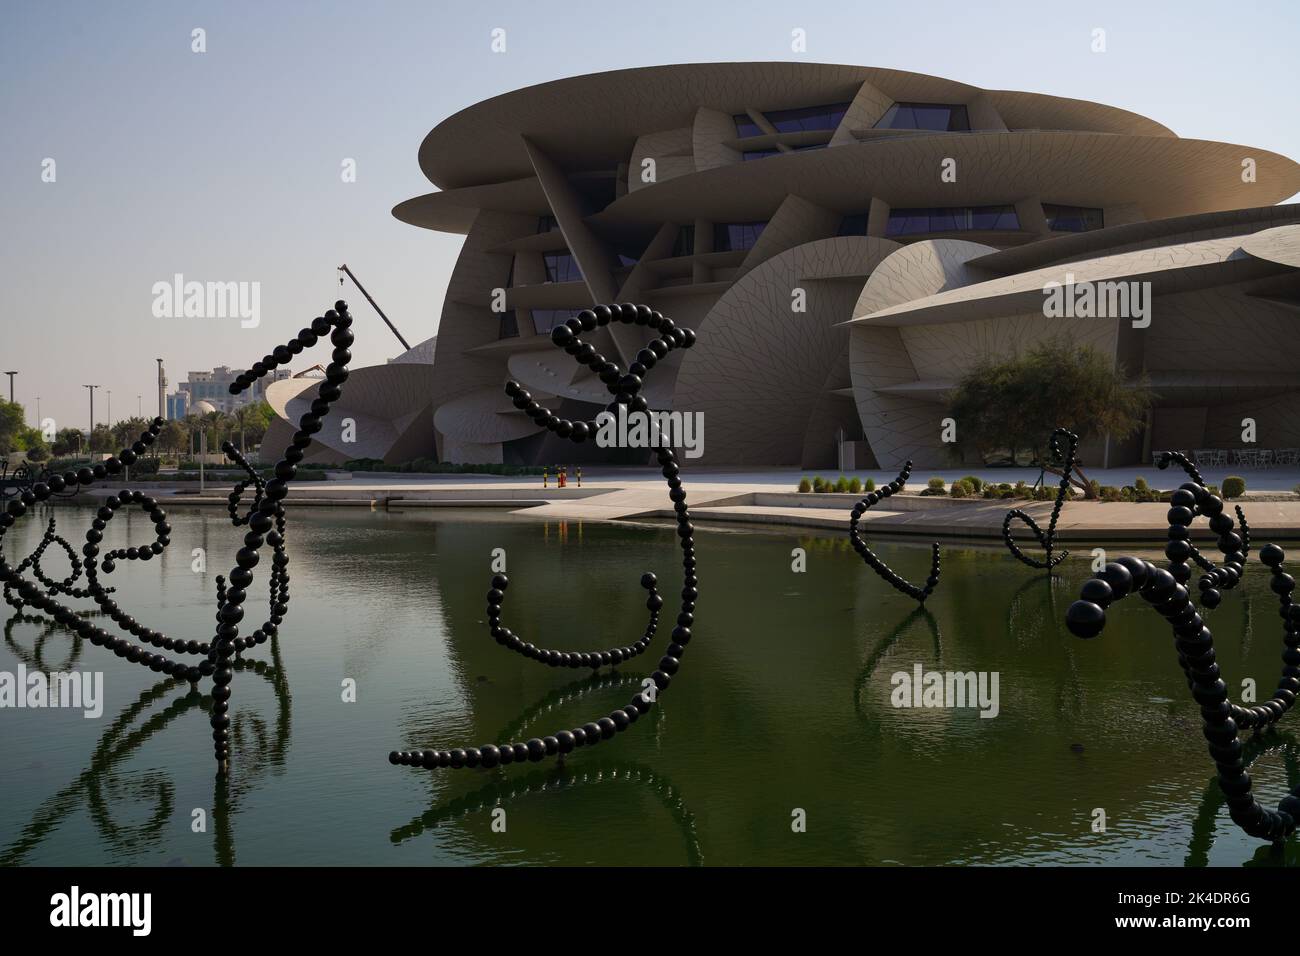 Doha, Katar, 1. Oktober 2022. Das Nationalmuseum von Katar wurde am 28. März 2019 der Öffentlichkeit zugänglich gemacht. Das Gebäude wurde von dem Architekten Jean Nouvel entworfen, der sich von dem Wüstenrosenkristall inspirieren ließ, der in Katar zu finden ist. Stockfoto